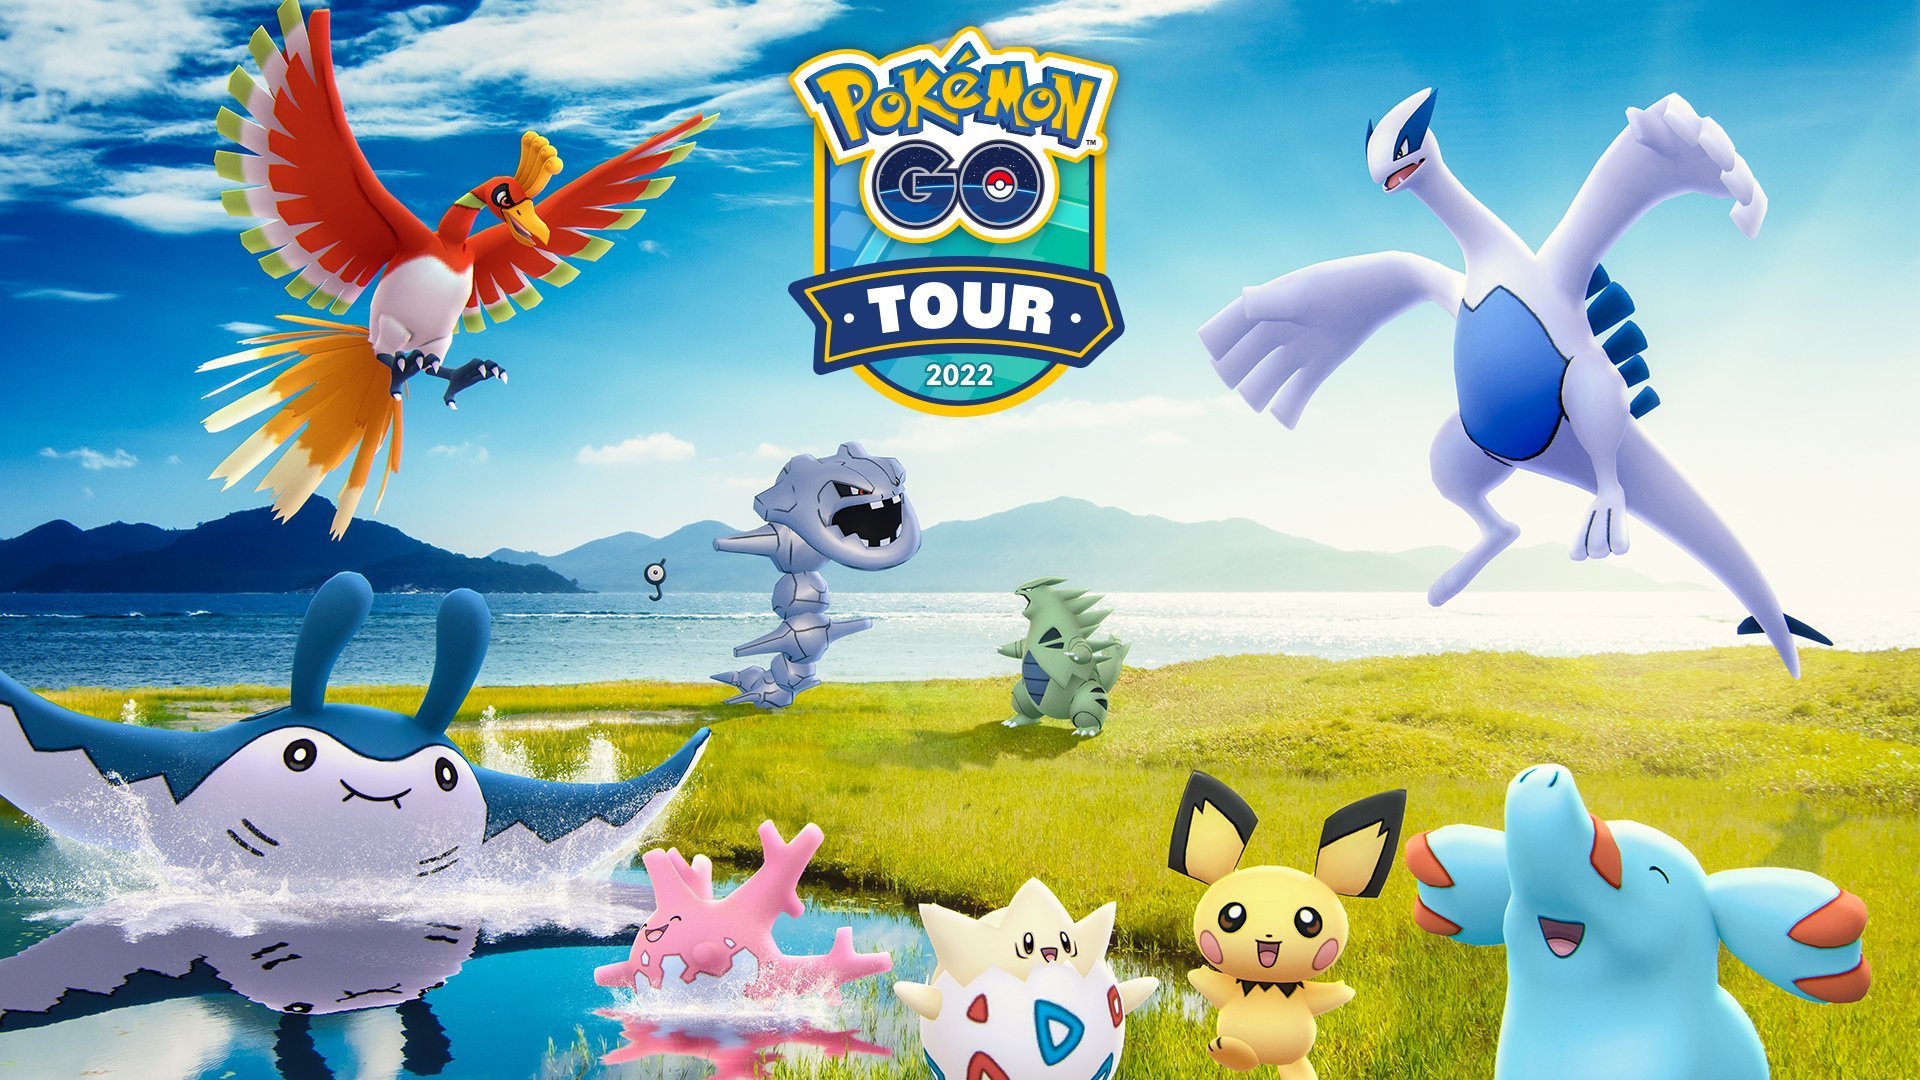 Pokémon Go Tour: Johto information